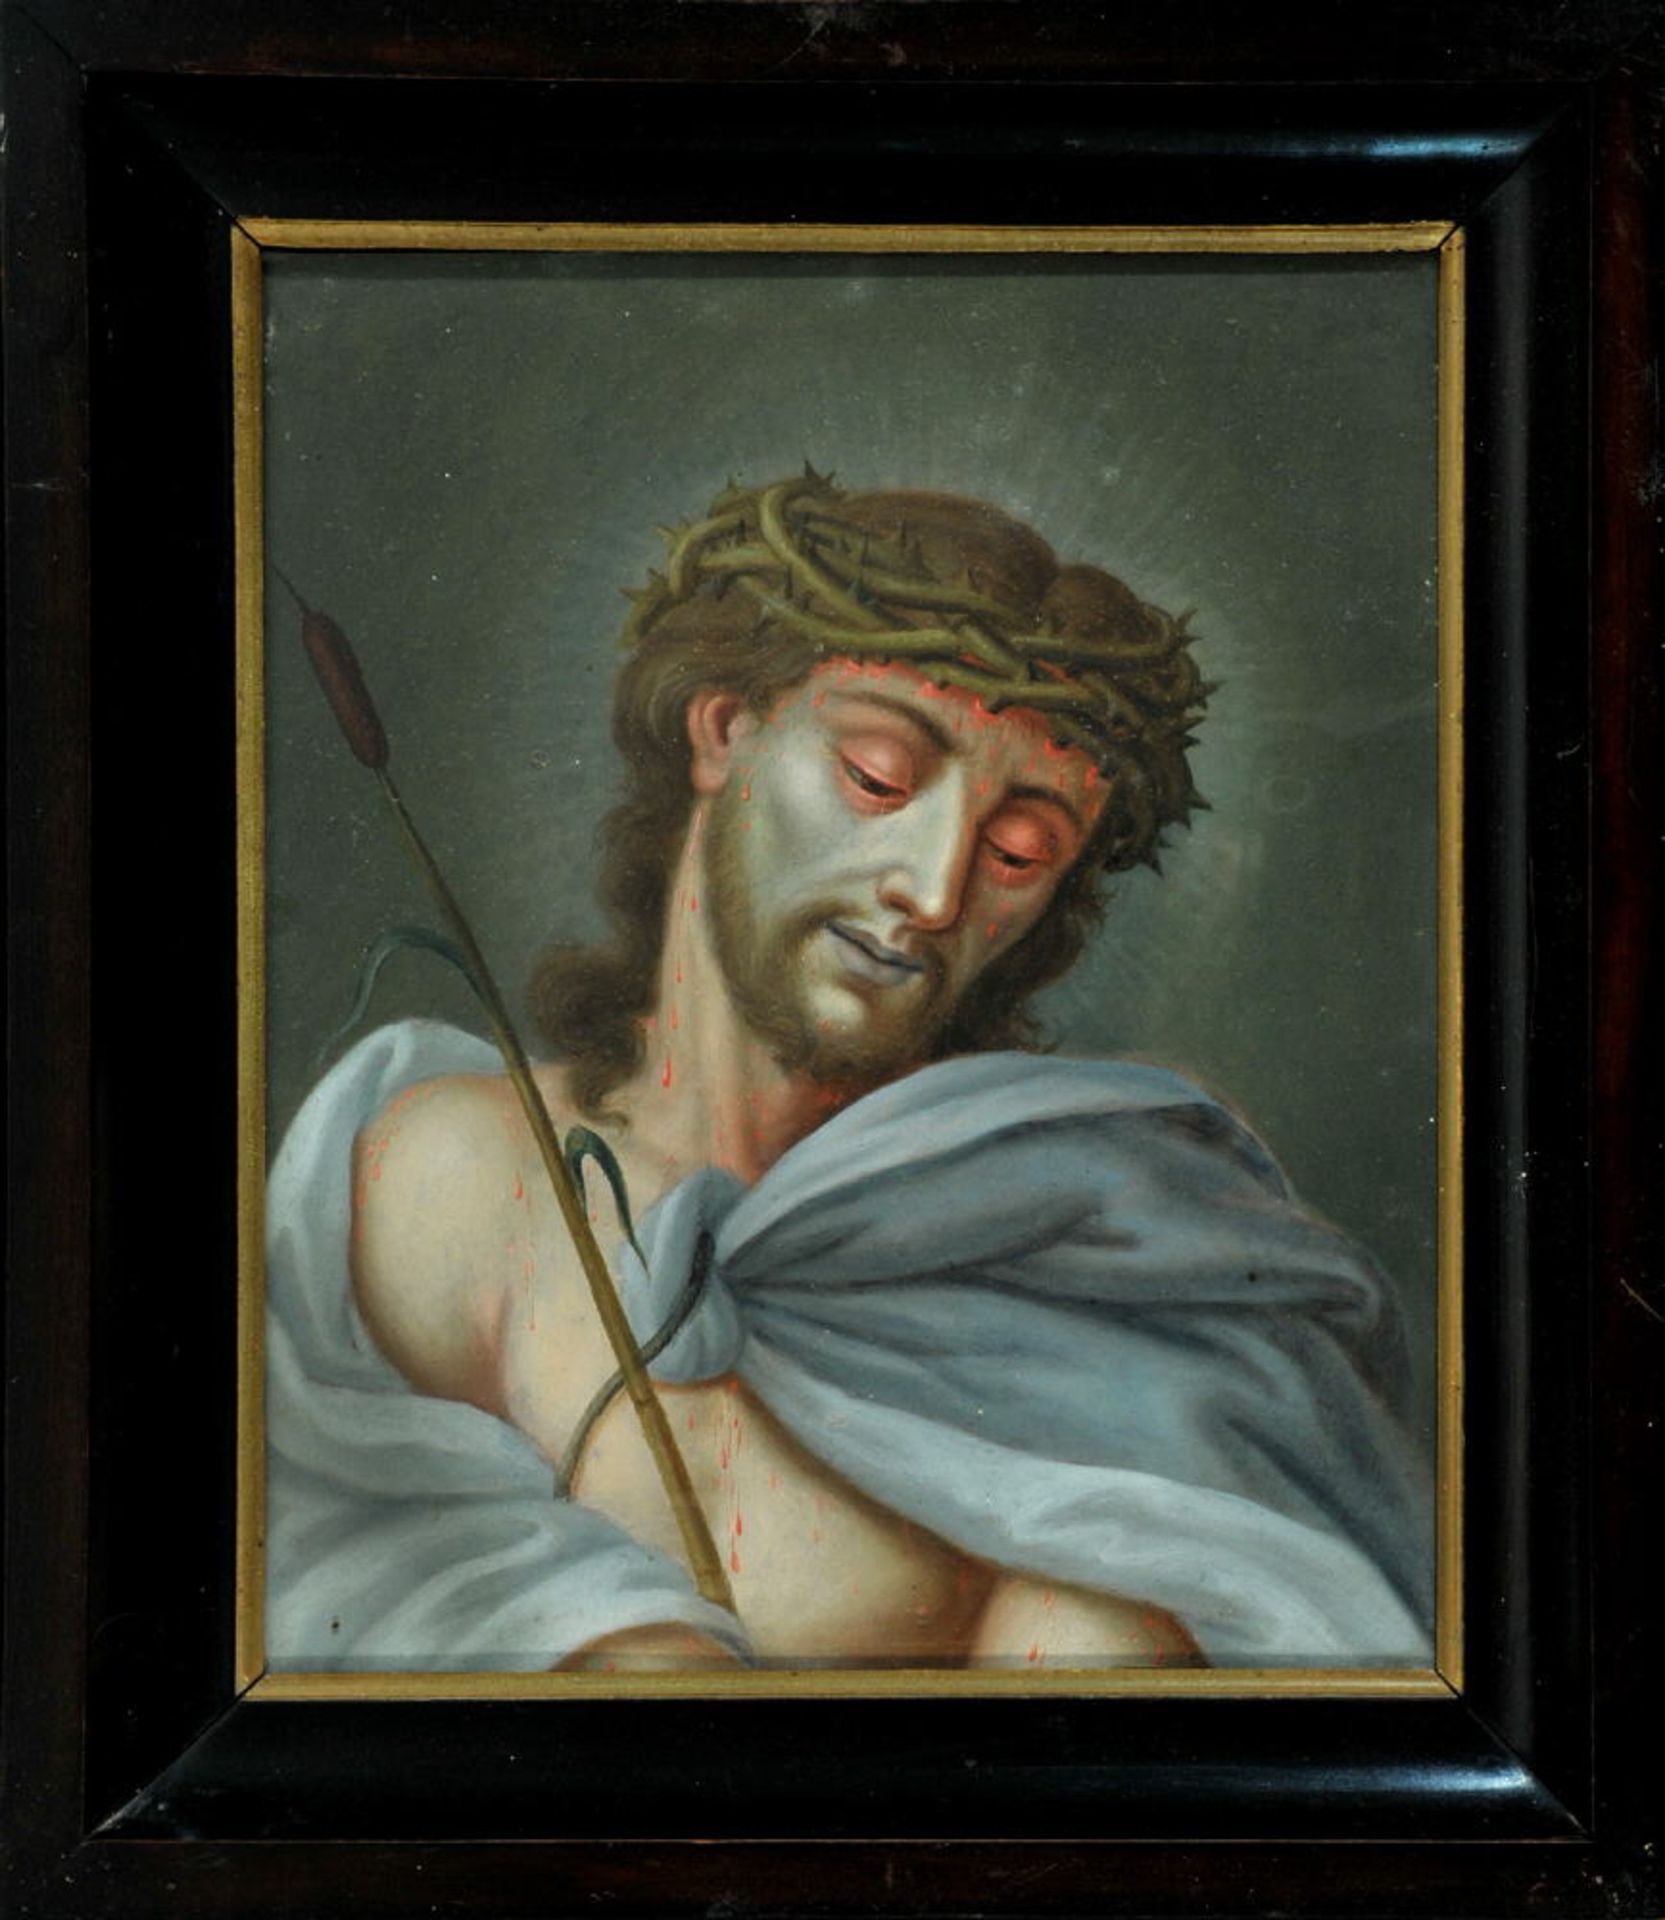 Bildnismaler des 19. Jh.Tempera/Krt, 29 x 24 cm, " Ecce Homo "